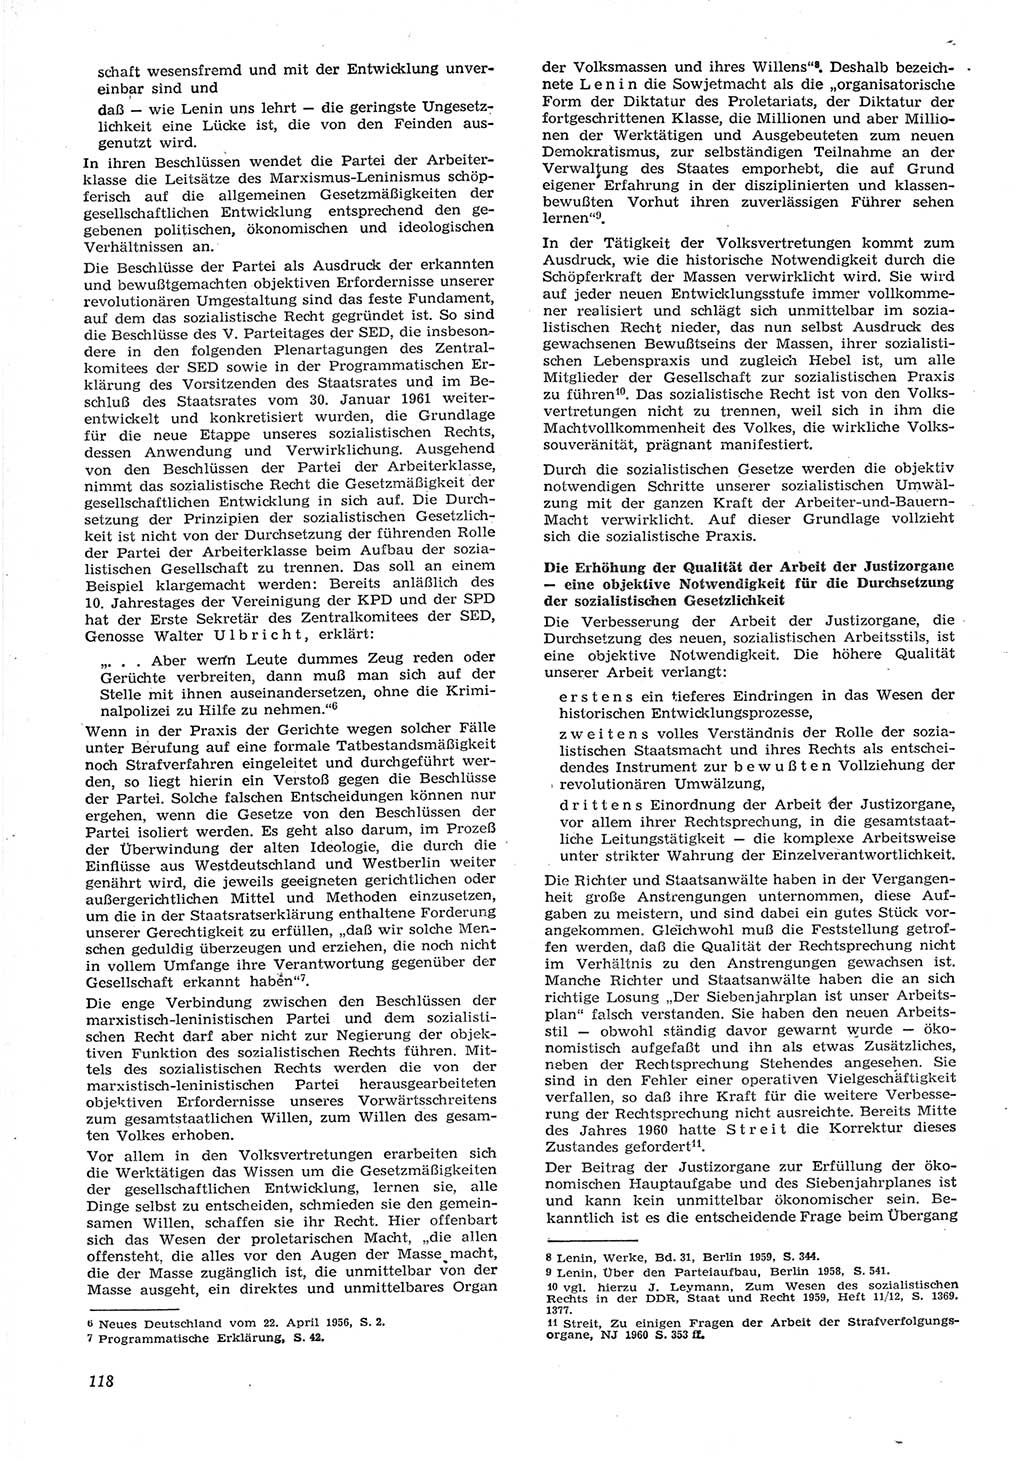 Neue Justiz (NJ), Zeitschrift für Recht und Rechtswissenschaft [Deutsche Demokratische Republik (DDR)], 15. Jahrgang 1961, Seite 118 (NJ DDR 1961, S. 118)